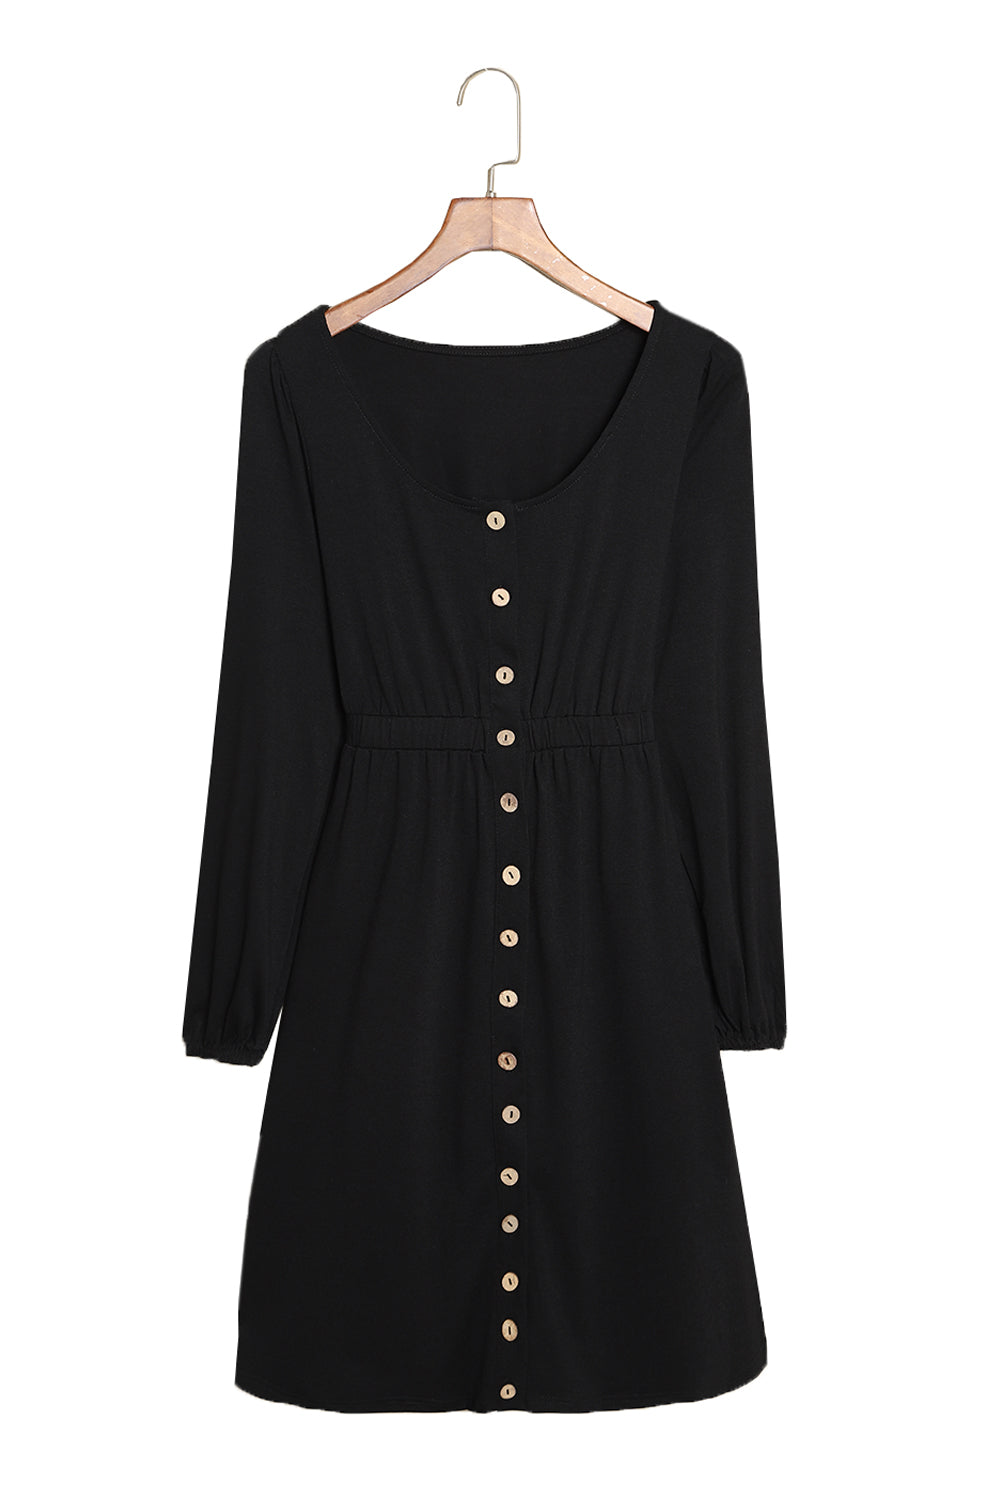 Black Button Up High Waist Long Sleeve Dress-16